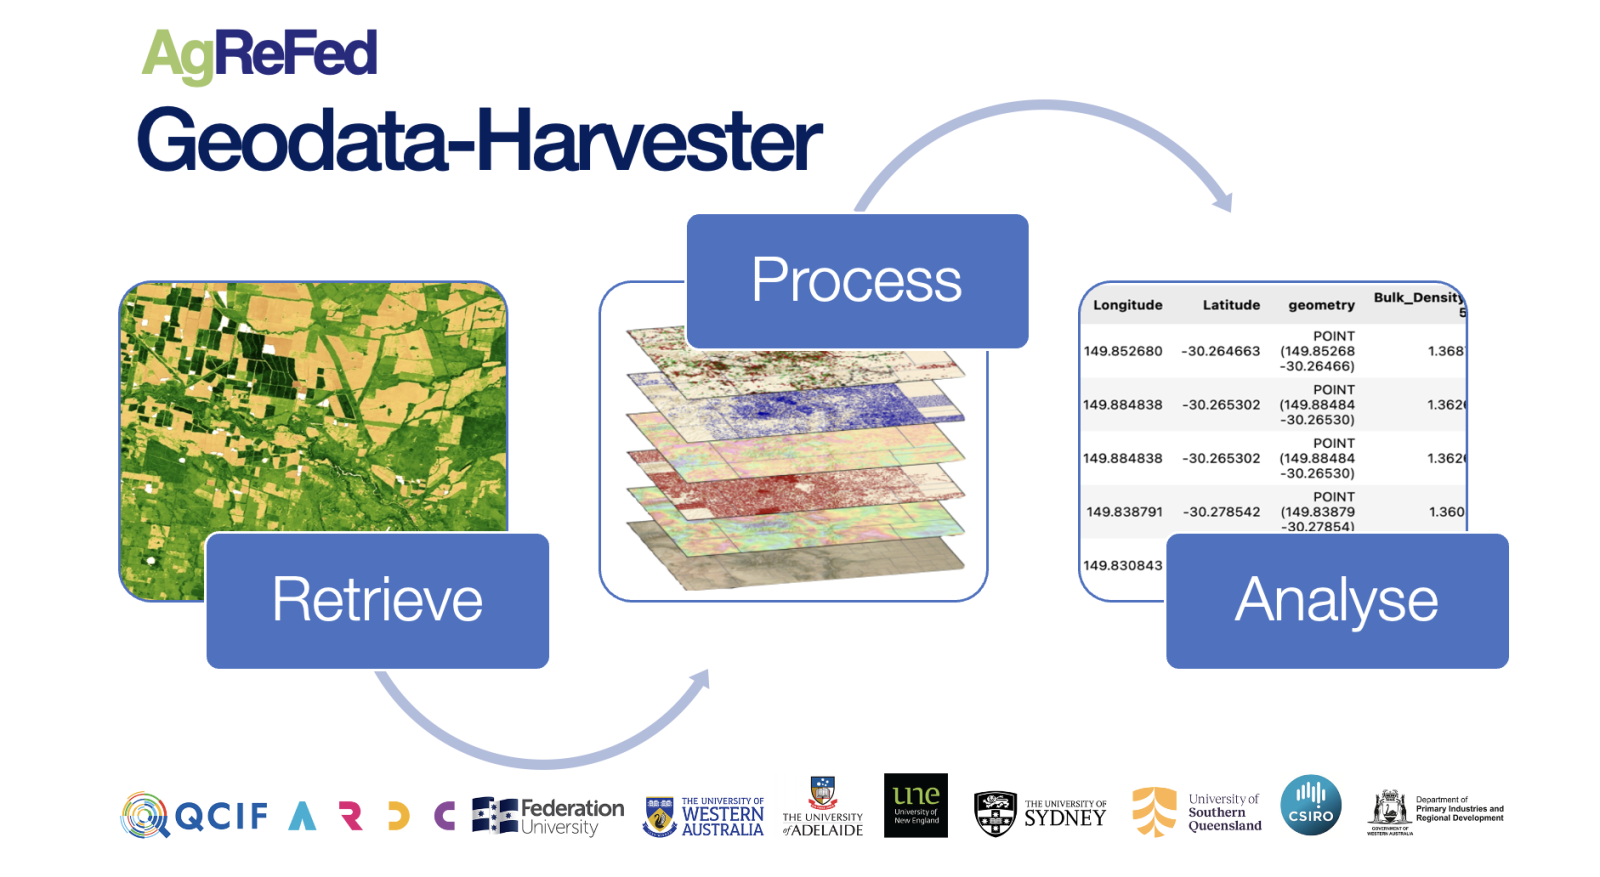 AgReFed Geodata Harvester